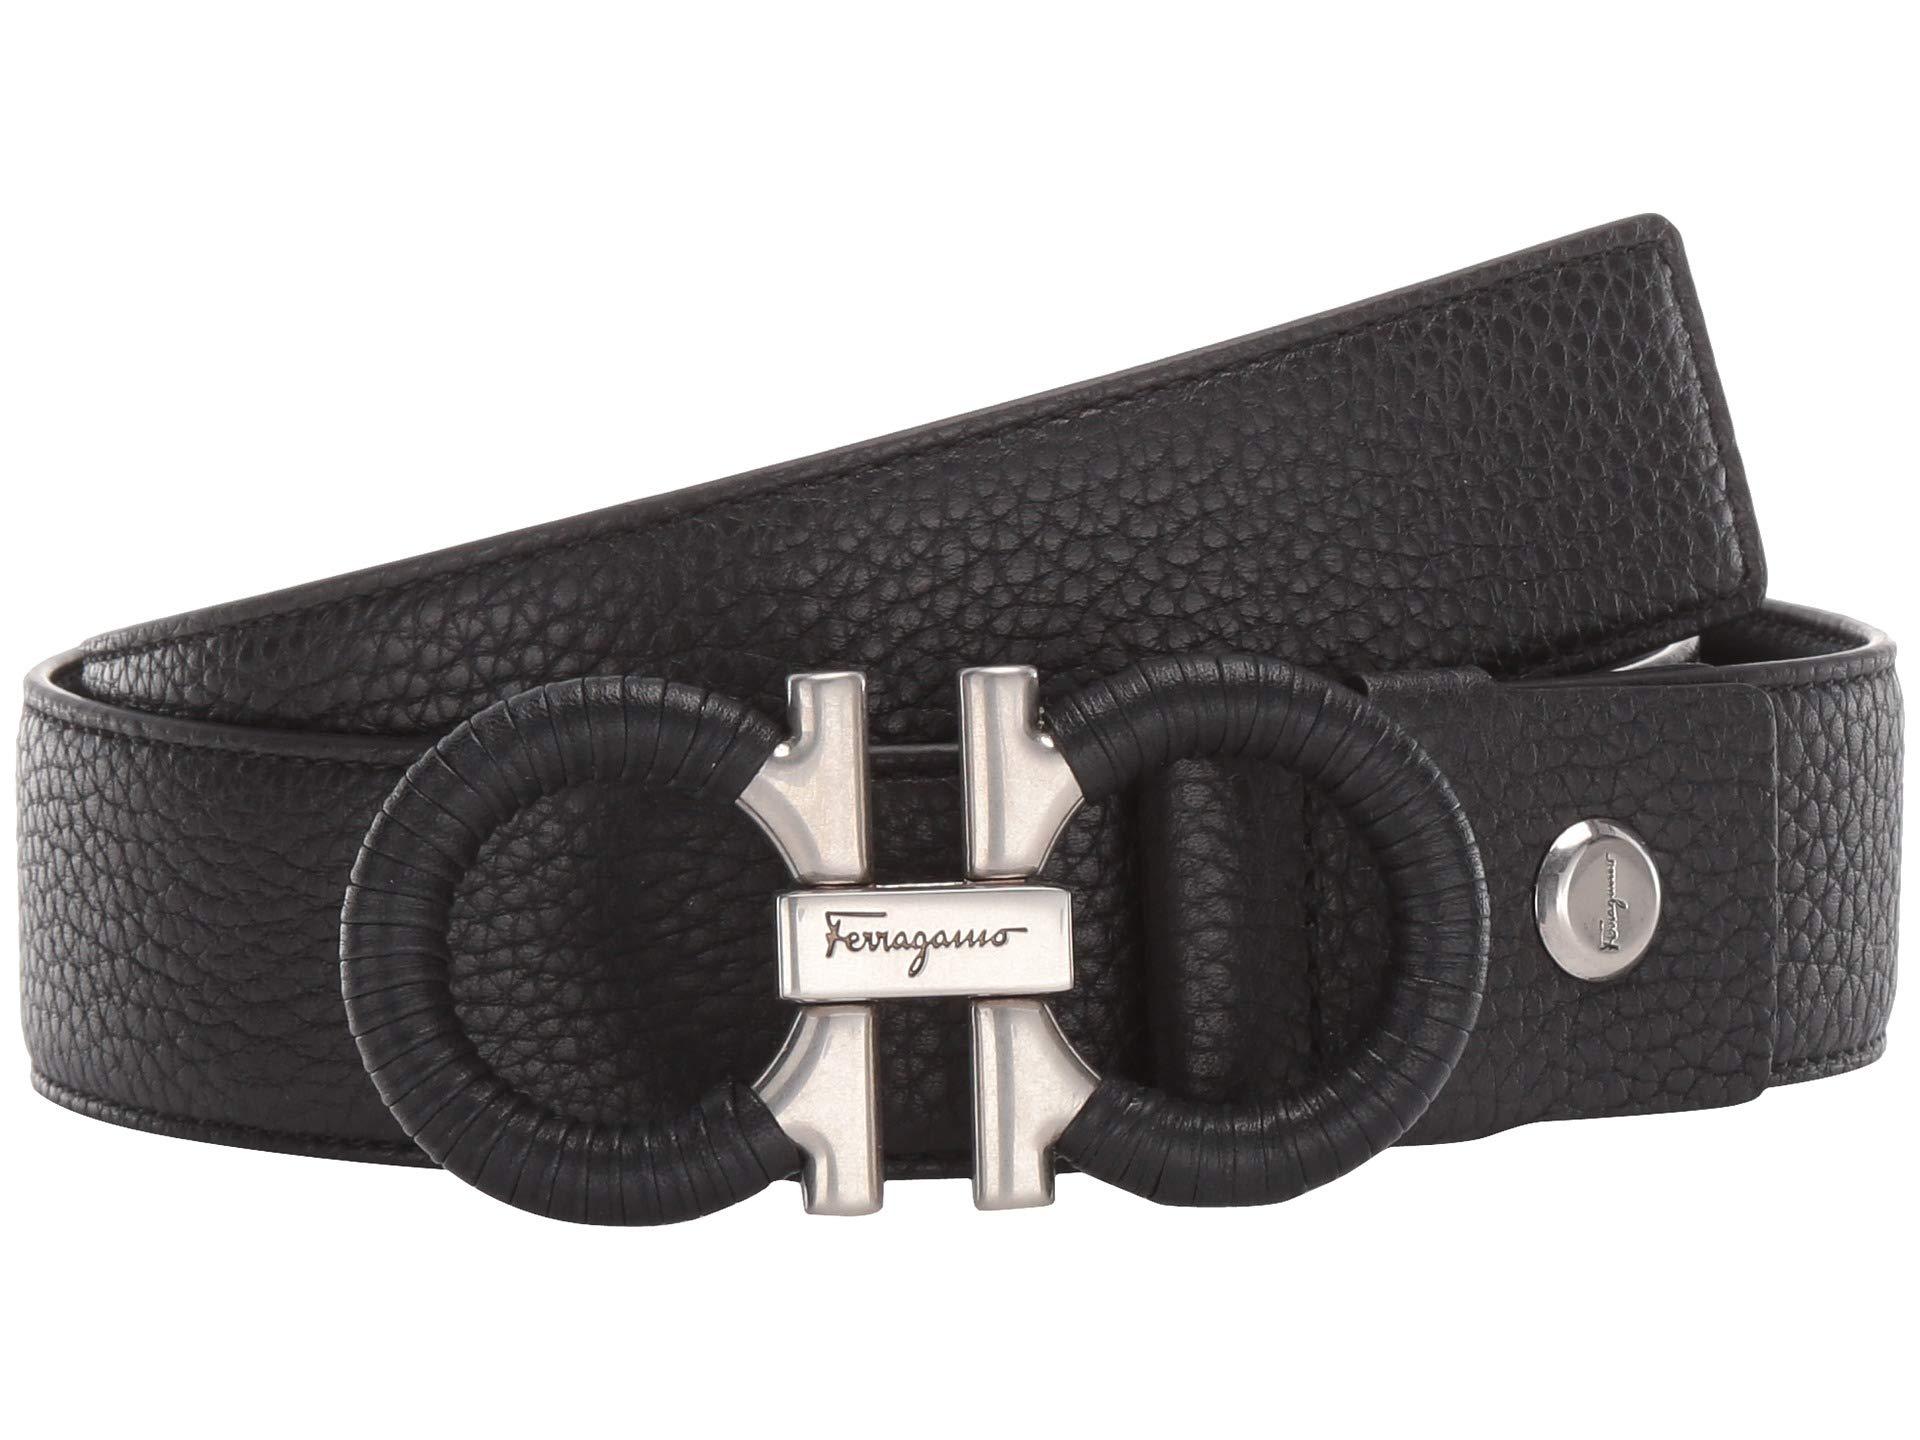 Ferragamo Leather Adjustable/reversible Belt - 67a062 in Black for Men - Lyst